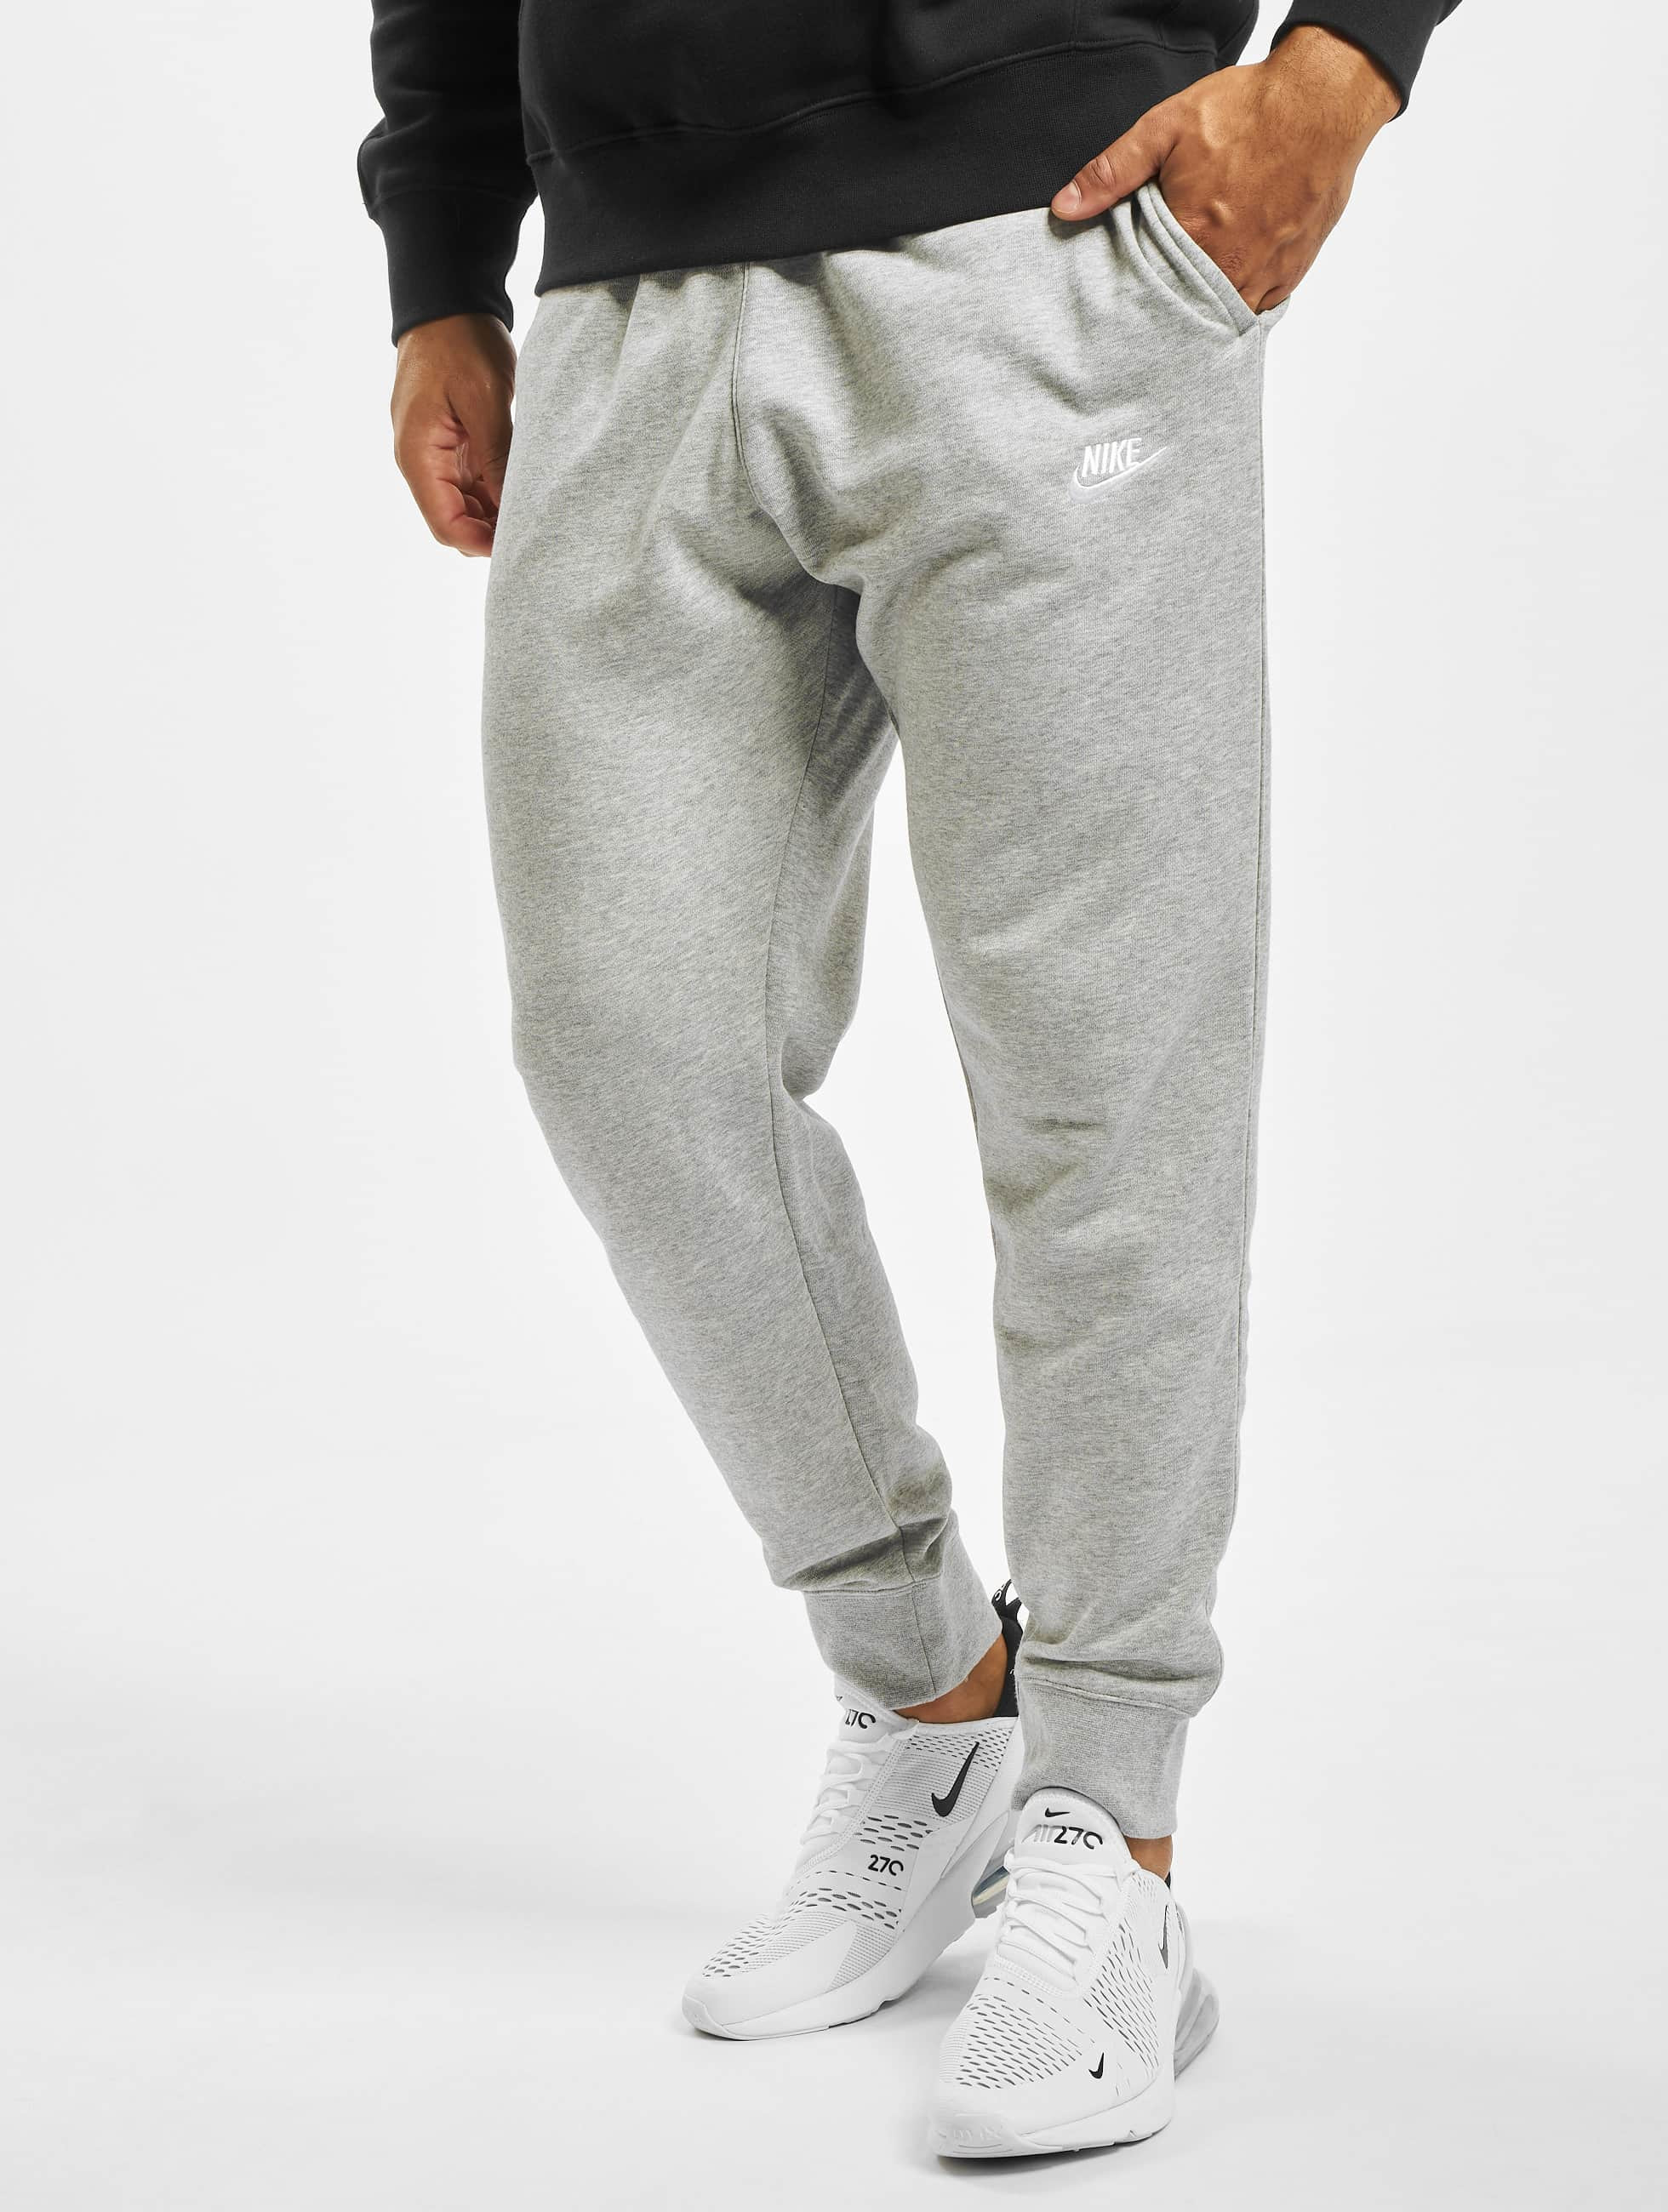 Por estimular venganza Nike Pantalón / Pantalón deportivo Jogger Fit en gris 685030